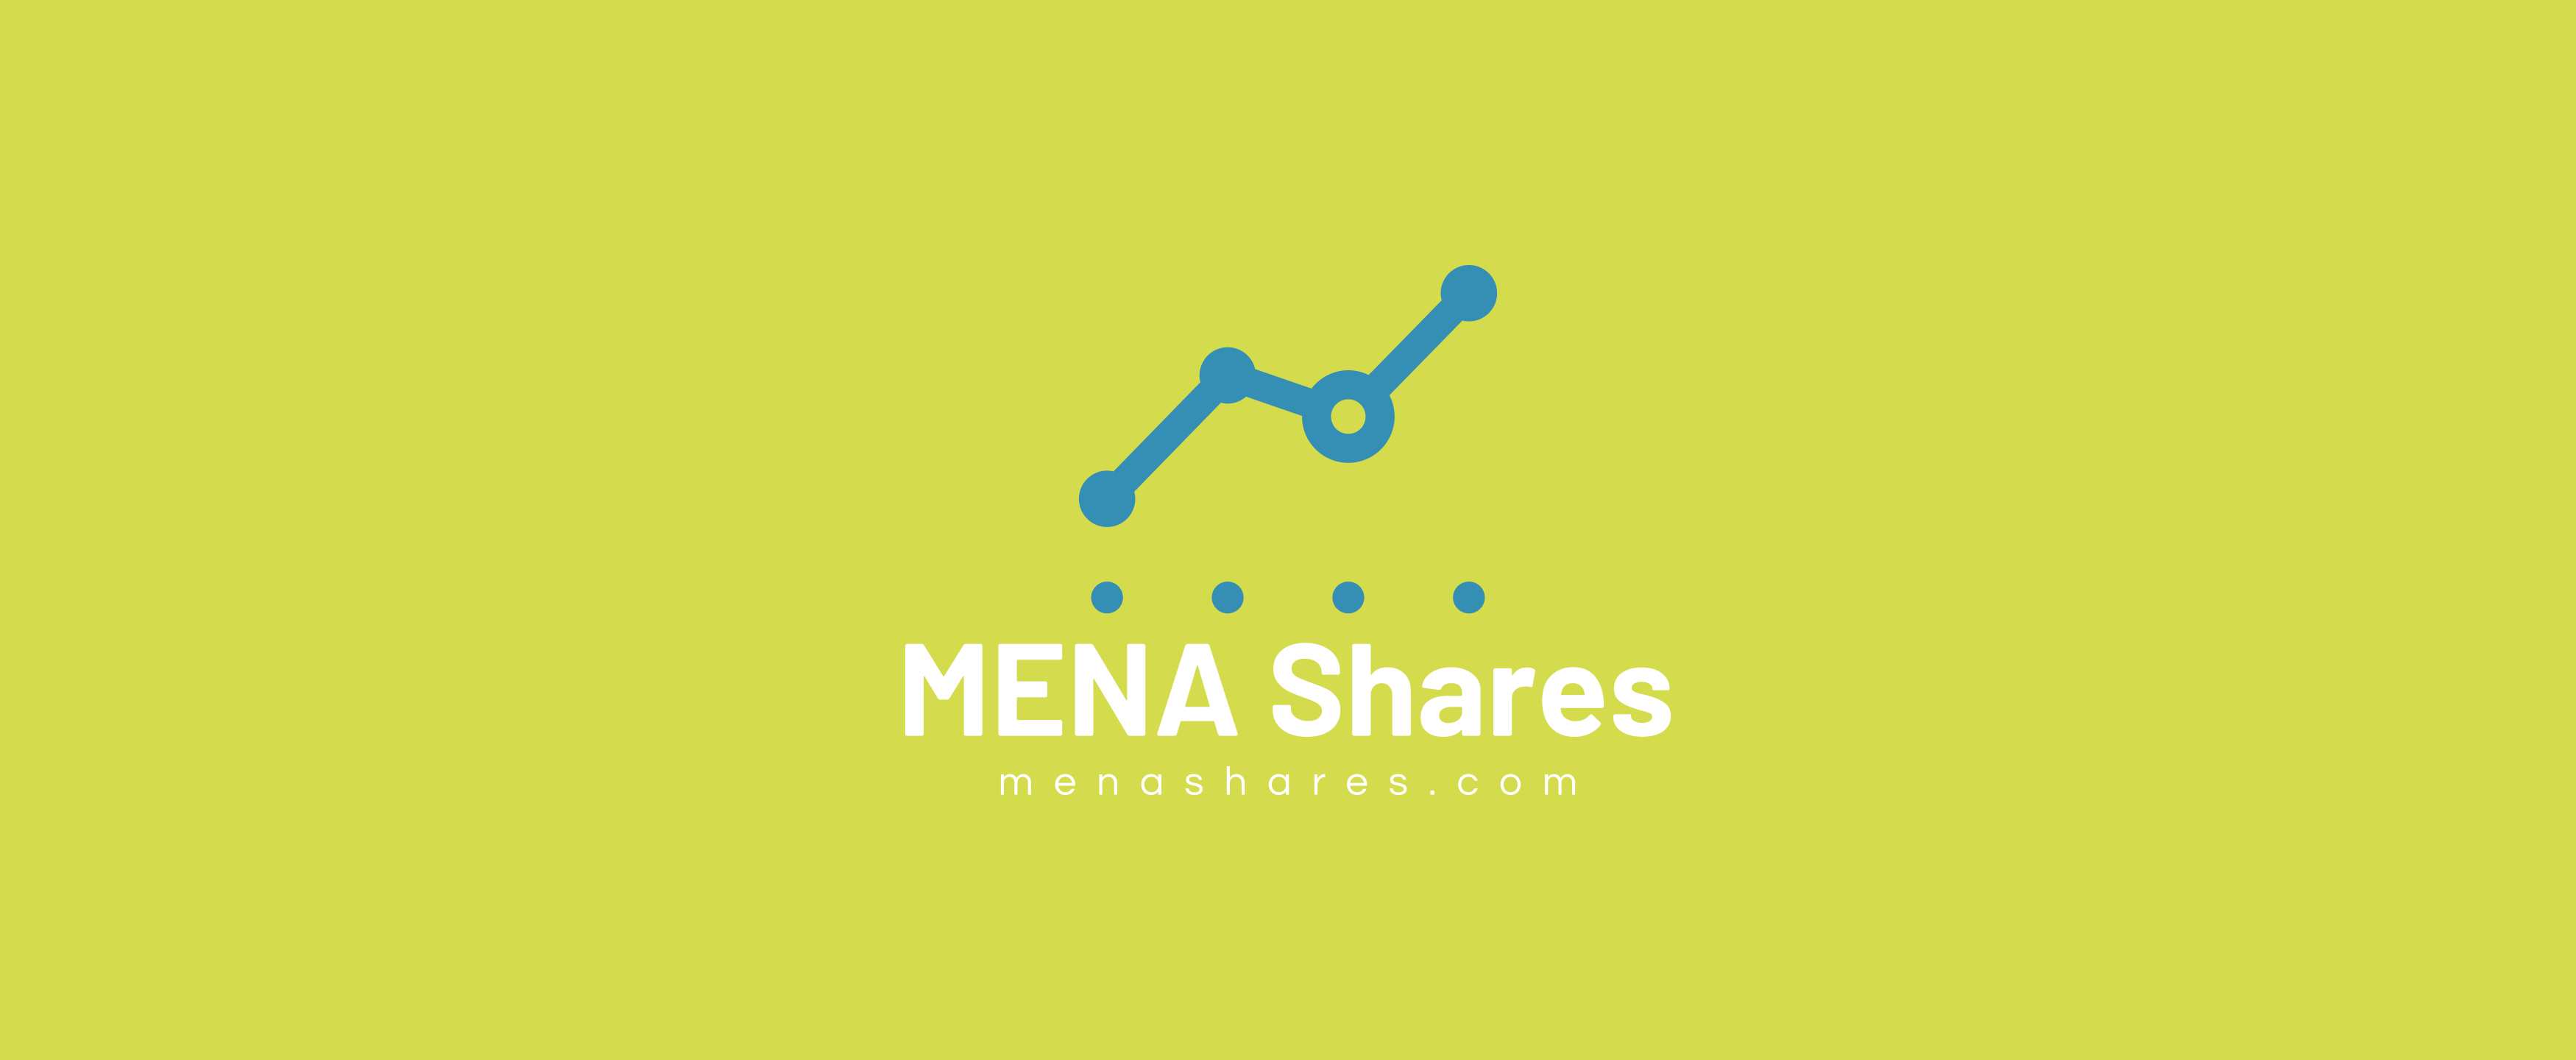 MENA Shares